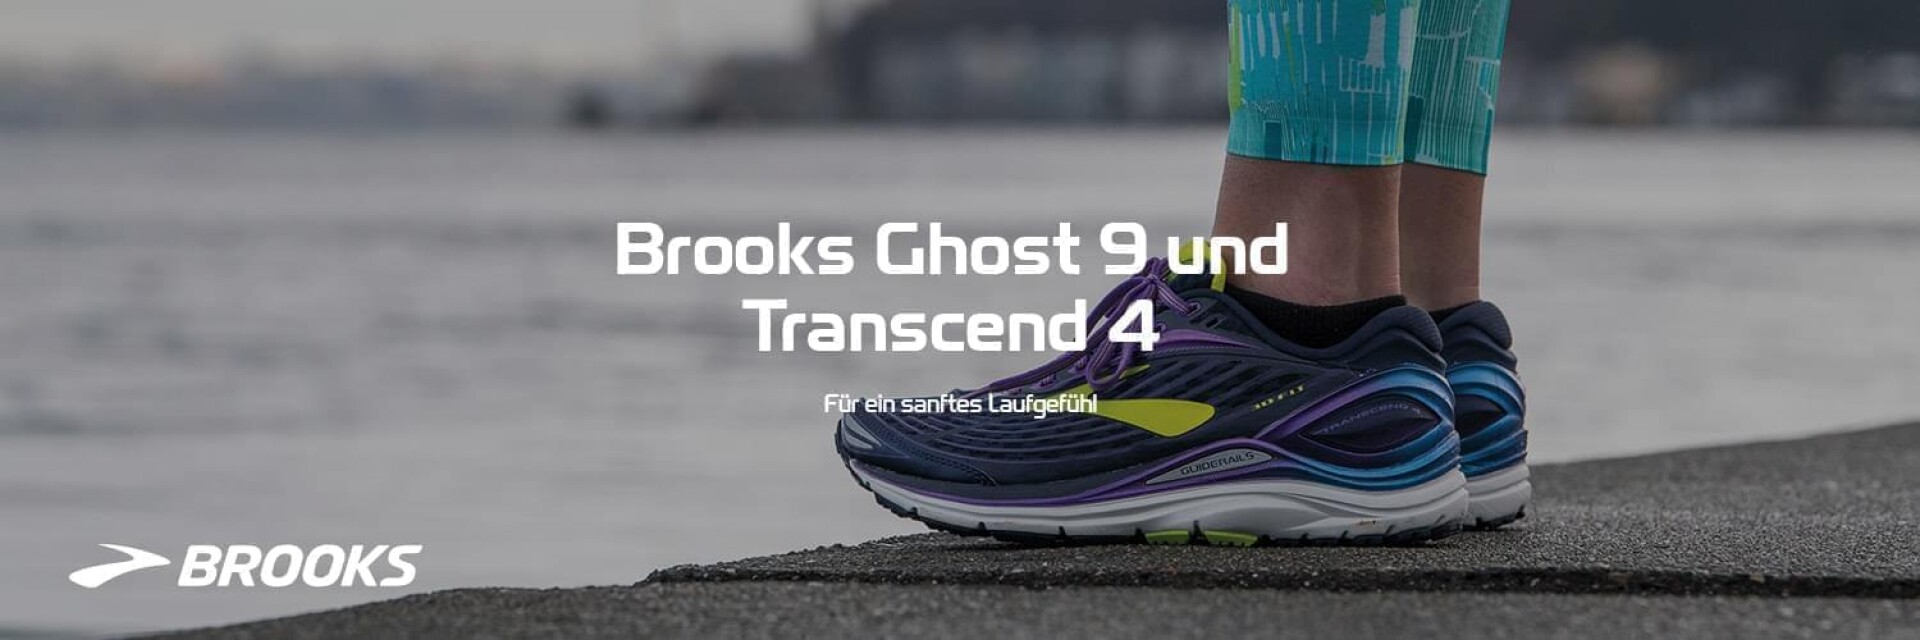 Brooks Ghost 9 und Transcend 4